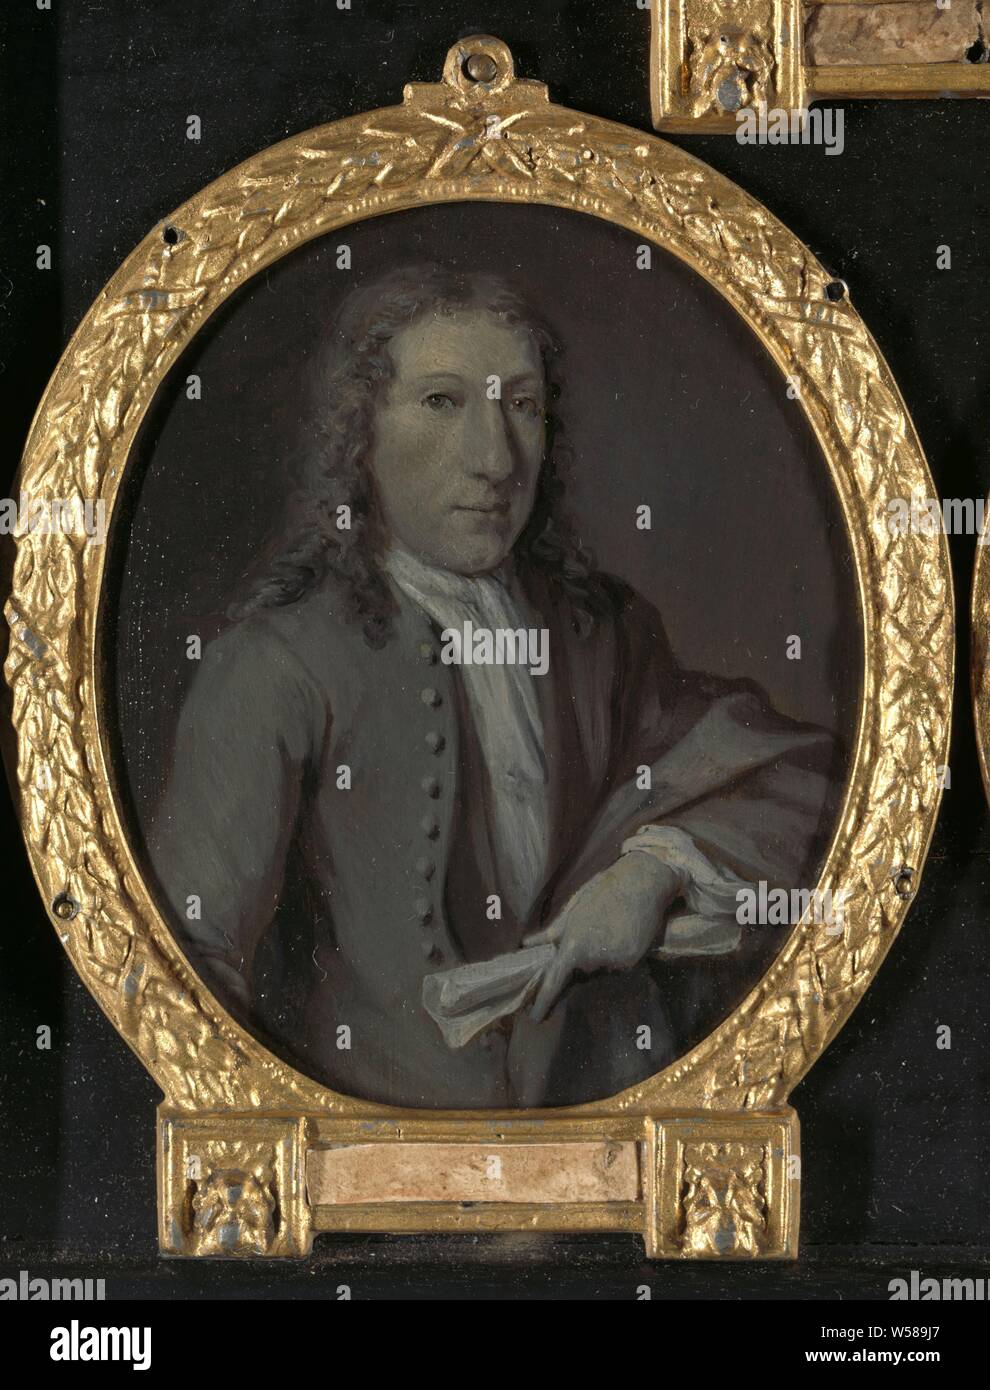 Portrait von Gijsbert Tijssens (1693-1732), Dramatiker in Amsterdam, Portrait von Gijsbert Tijssens (1693-1732). Dramatiker in Amsterdam. Büste in Oval, auf der rechten Seite wird eine aufgerollt Papier in der linken Hand. Ähnlich wie eine Zeichnung zurückzuführen auf aert Schouman im Teylers Museum in Haarlem (Panpoeticon von Willem Kops). Teil einer Sammlung von Portraits der niederländischen Dichter, Porträt eines Schriftstellers, Schriftsteller, Dichter, Autor, Gijsbert Tijssens, Jan Maurits Quinkhard, 1732-1771, kupfer (Metall), Ölfarbe (Lack), h 11 cm × w 9,5 cm Stockfoto